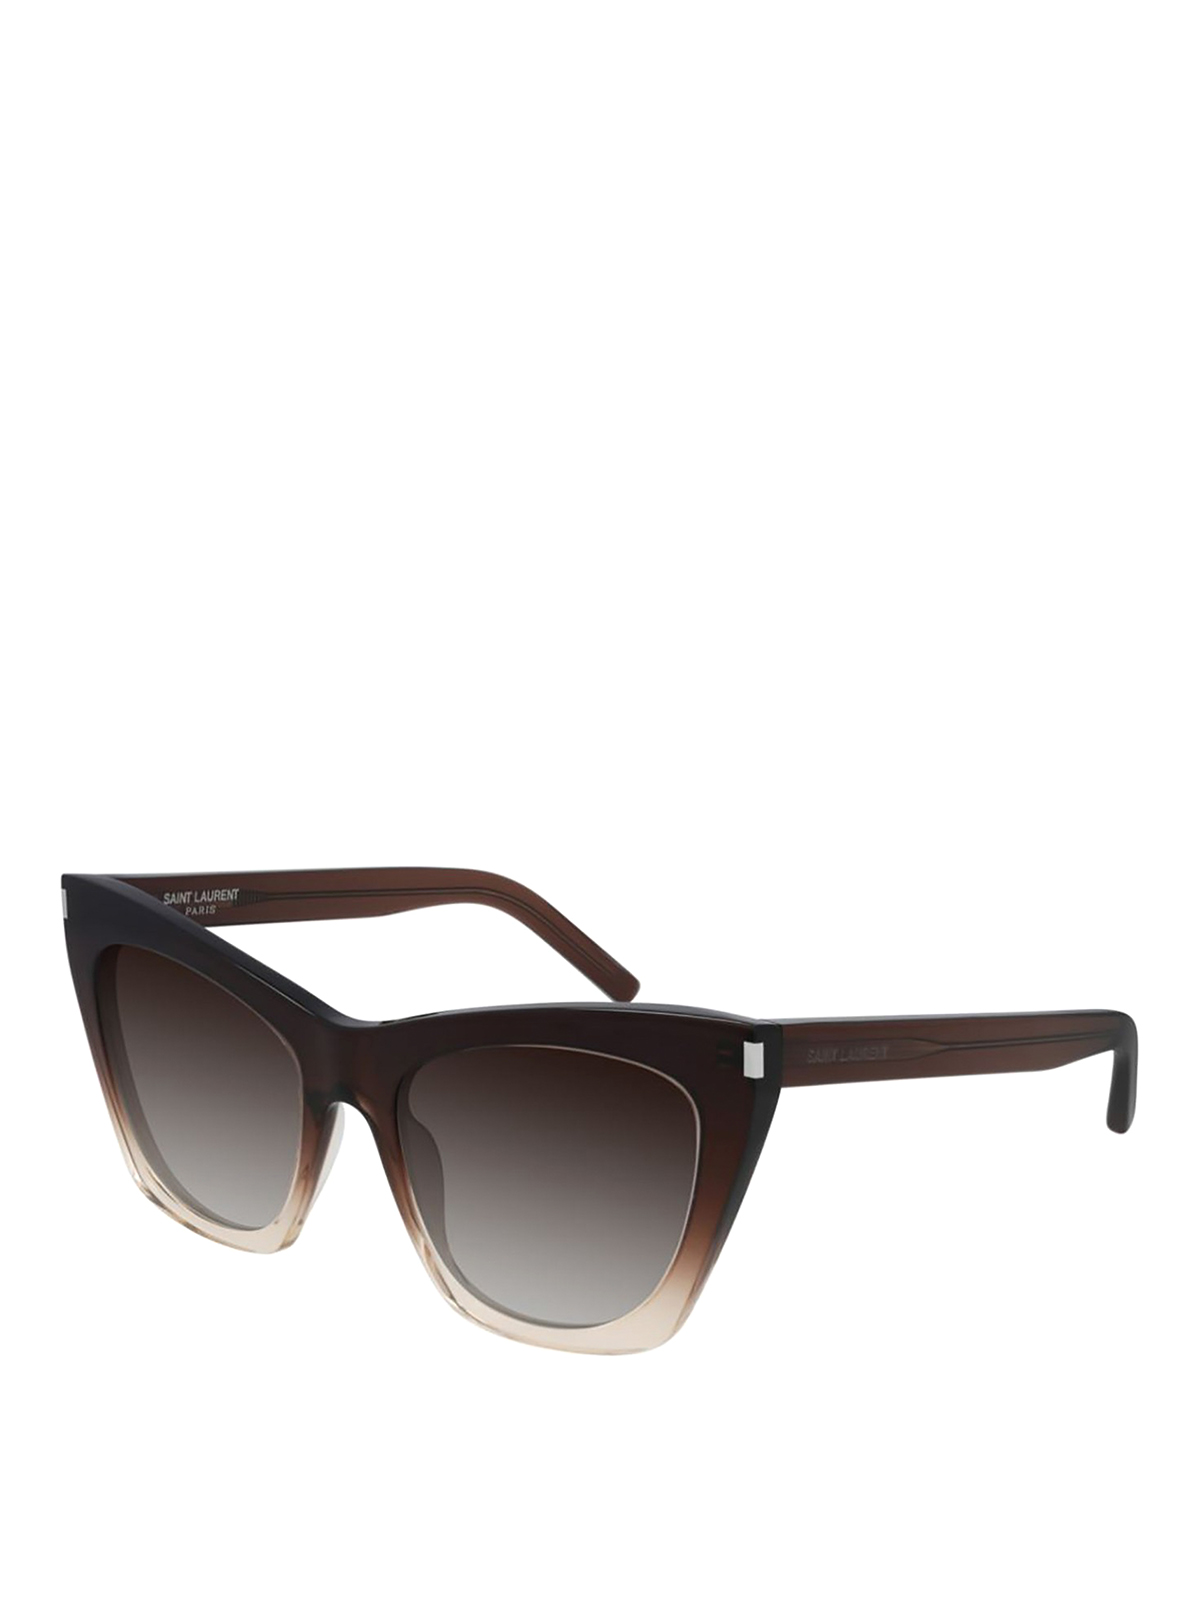 Saint Laurent 214 Kate Sunglasses In Brown